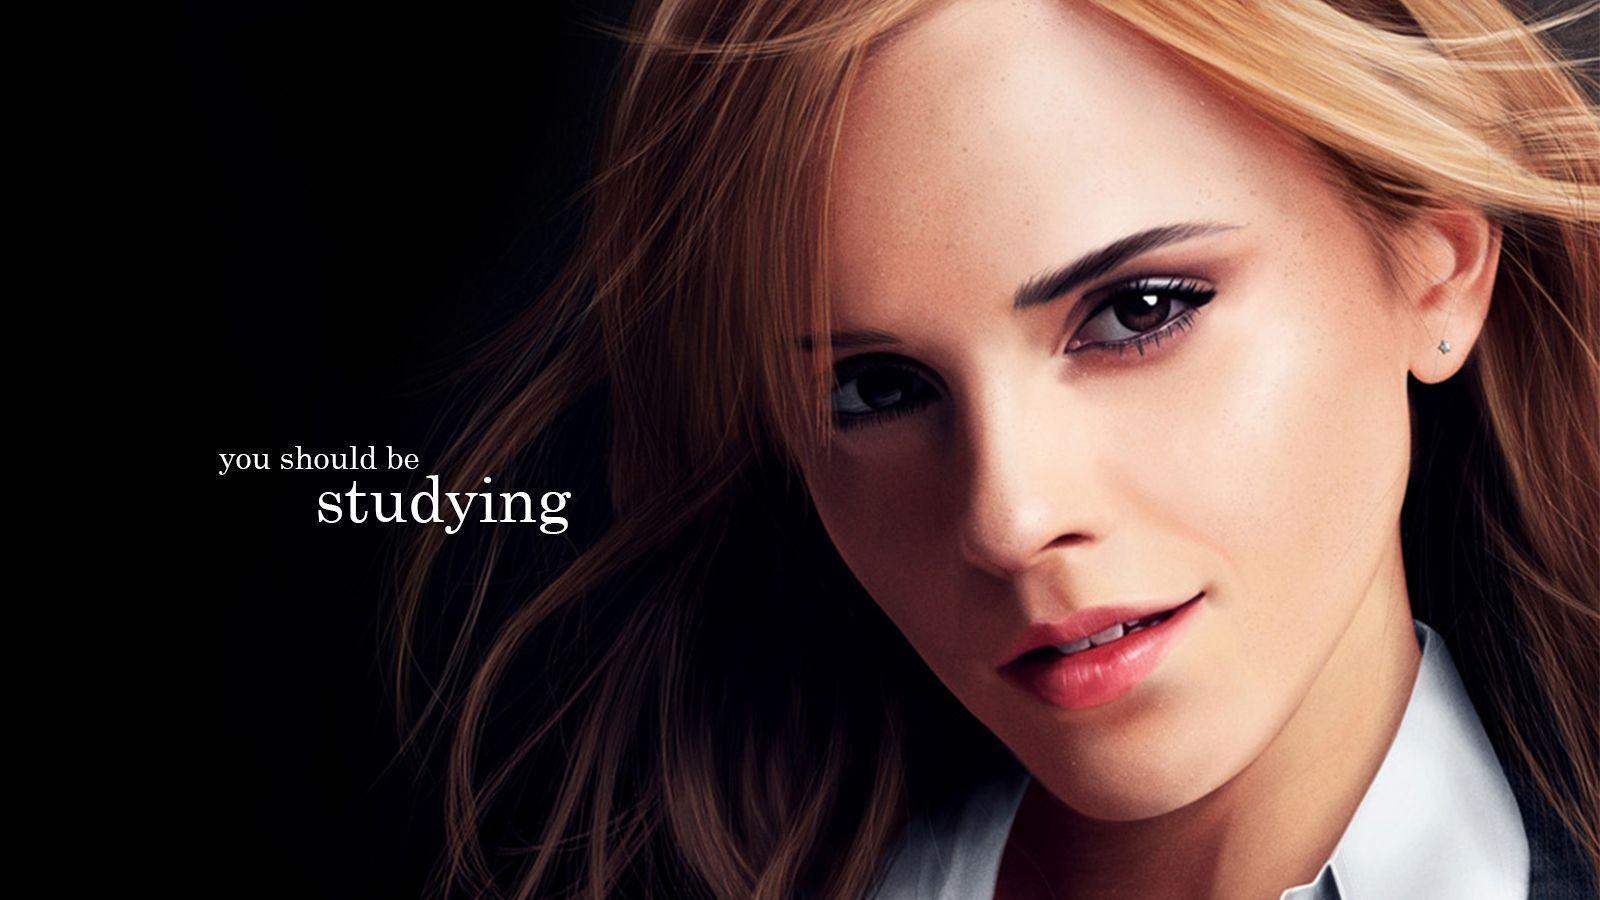 Emma Watson HD Wallpaper Wallpaper of Emma Watson